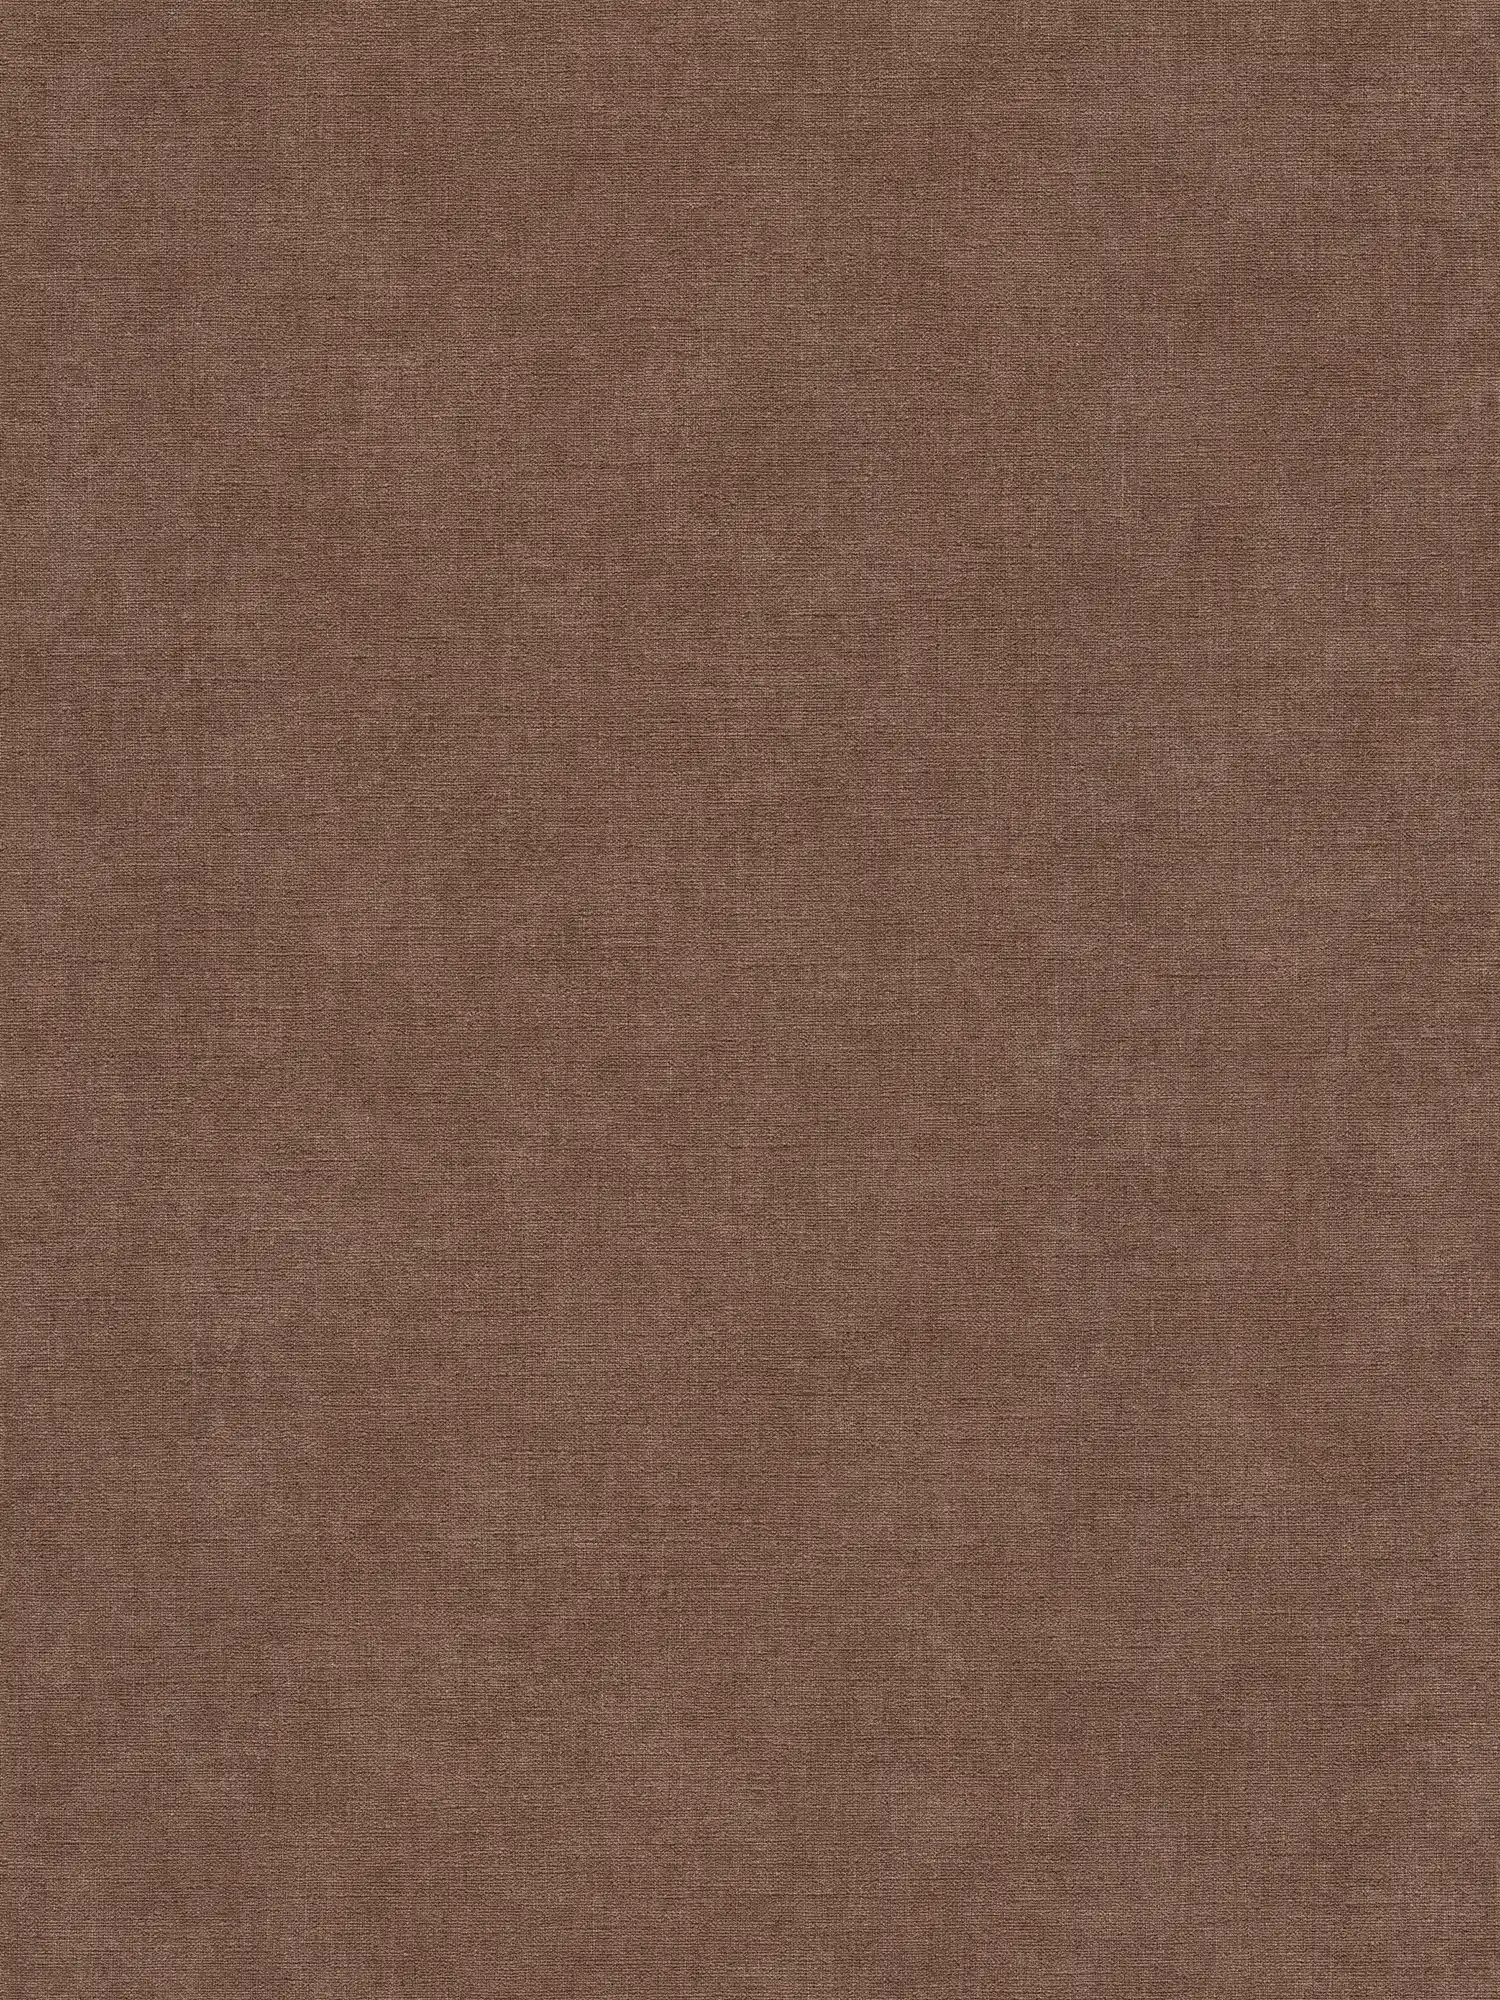 Papel pintado no tejido monocolor de textura ligera - marrón, rojo
